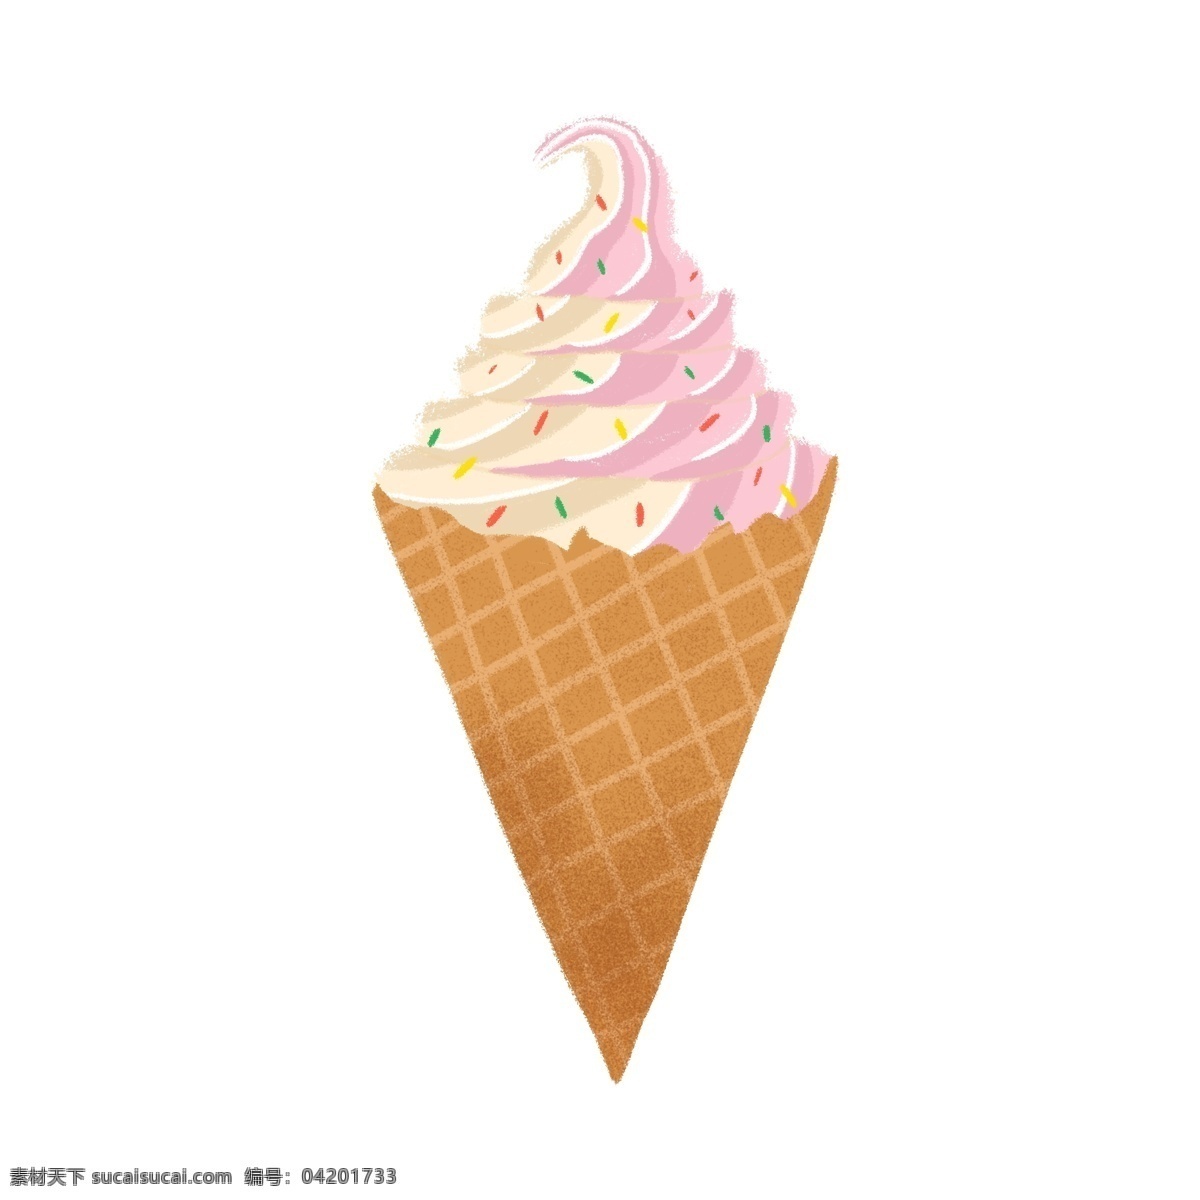 粉色冰激凌 雪糕 卡通 夏日 凉爽 简洁 手绘